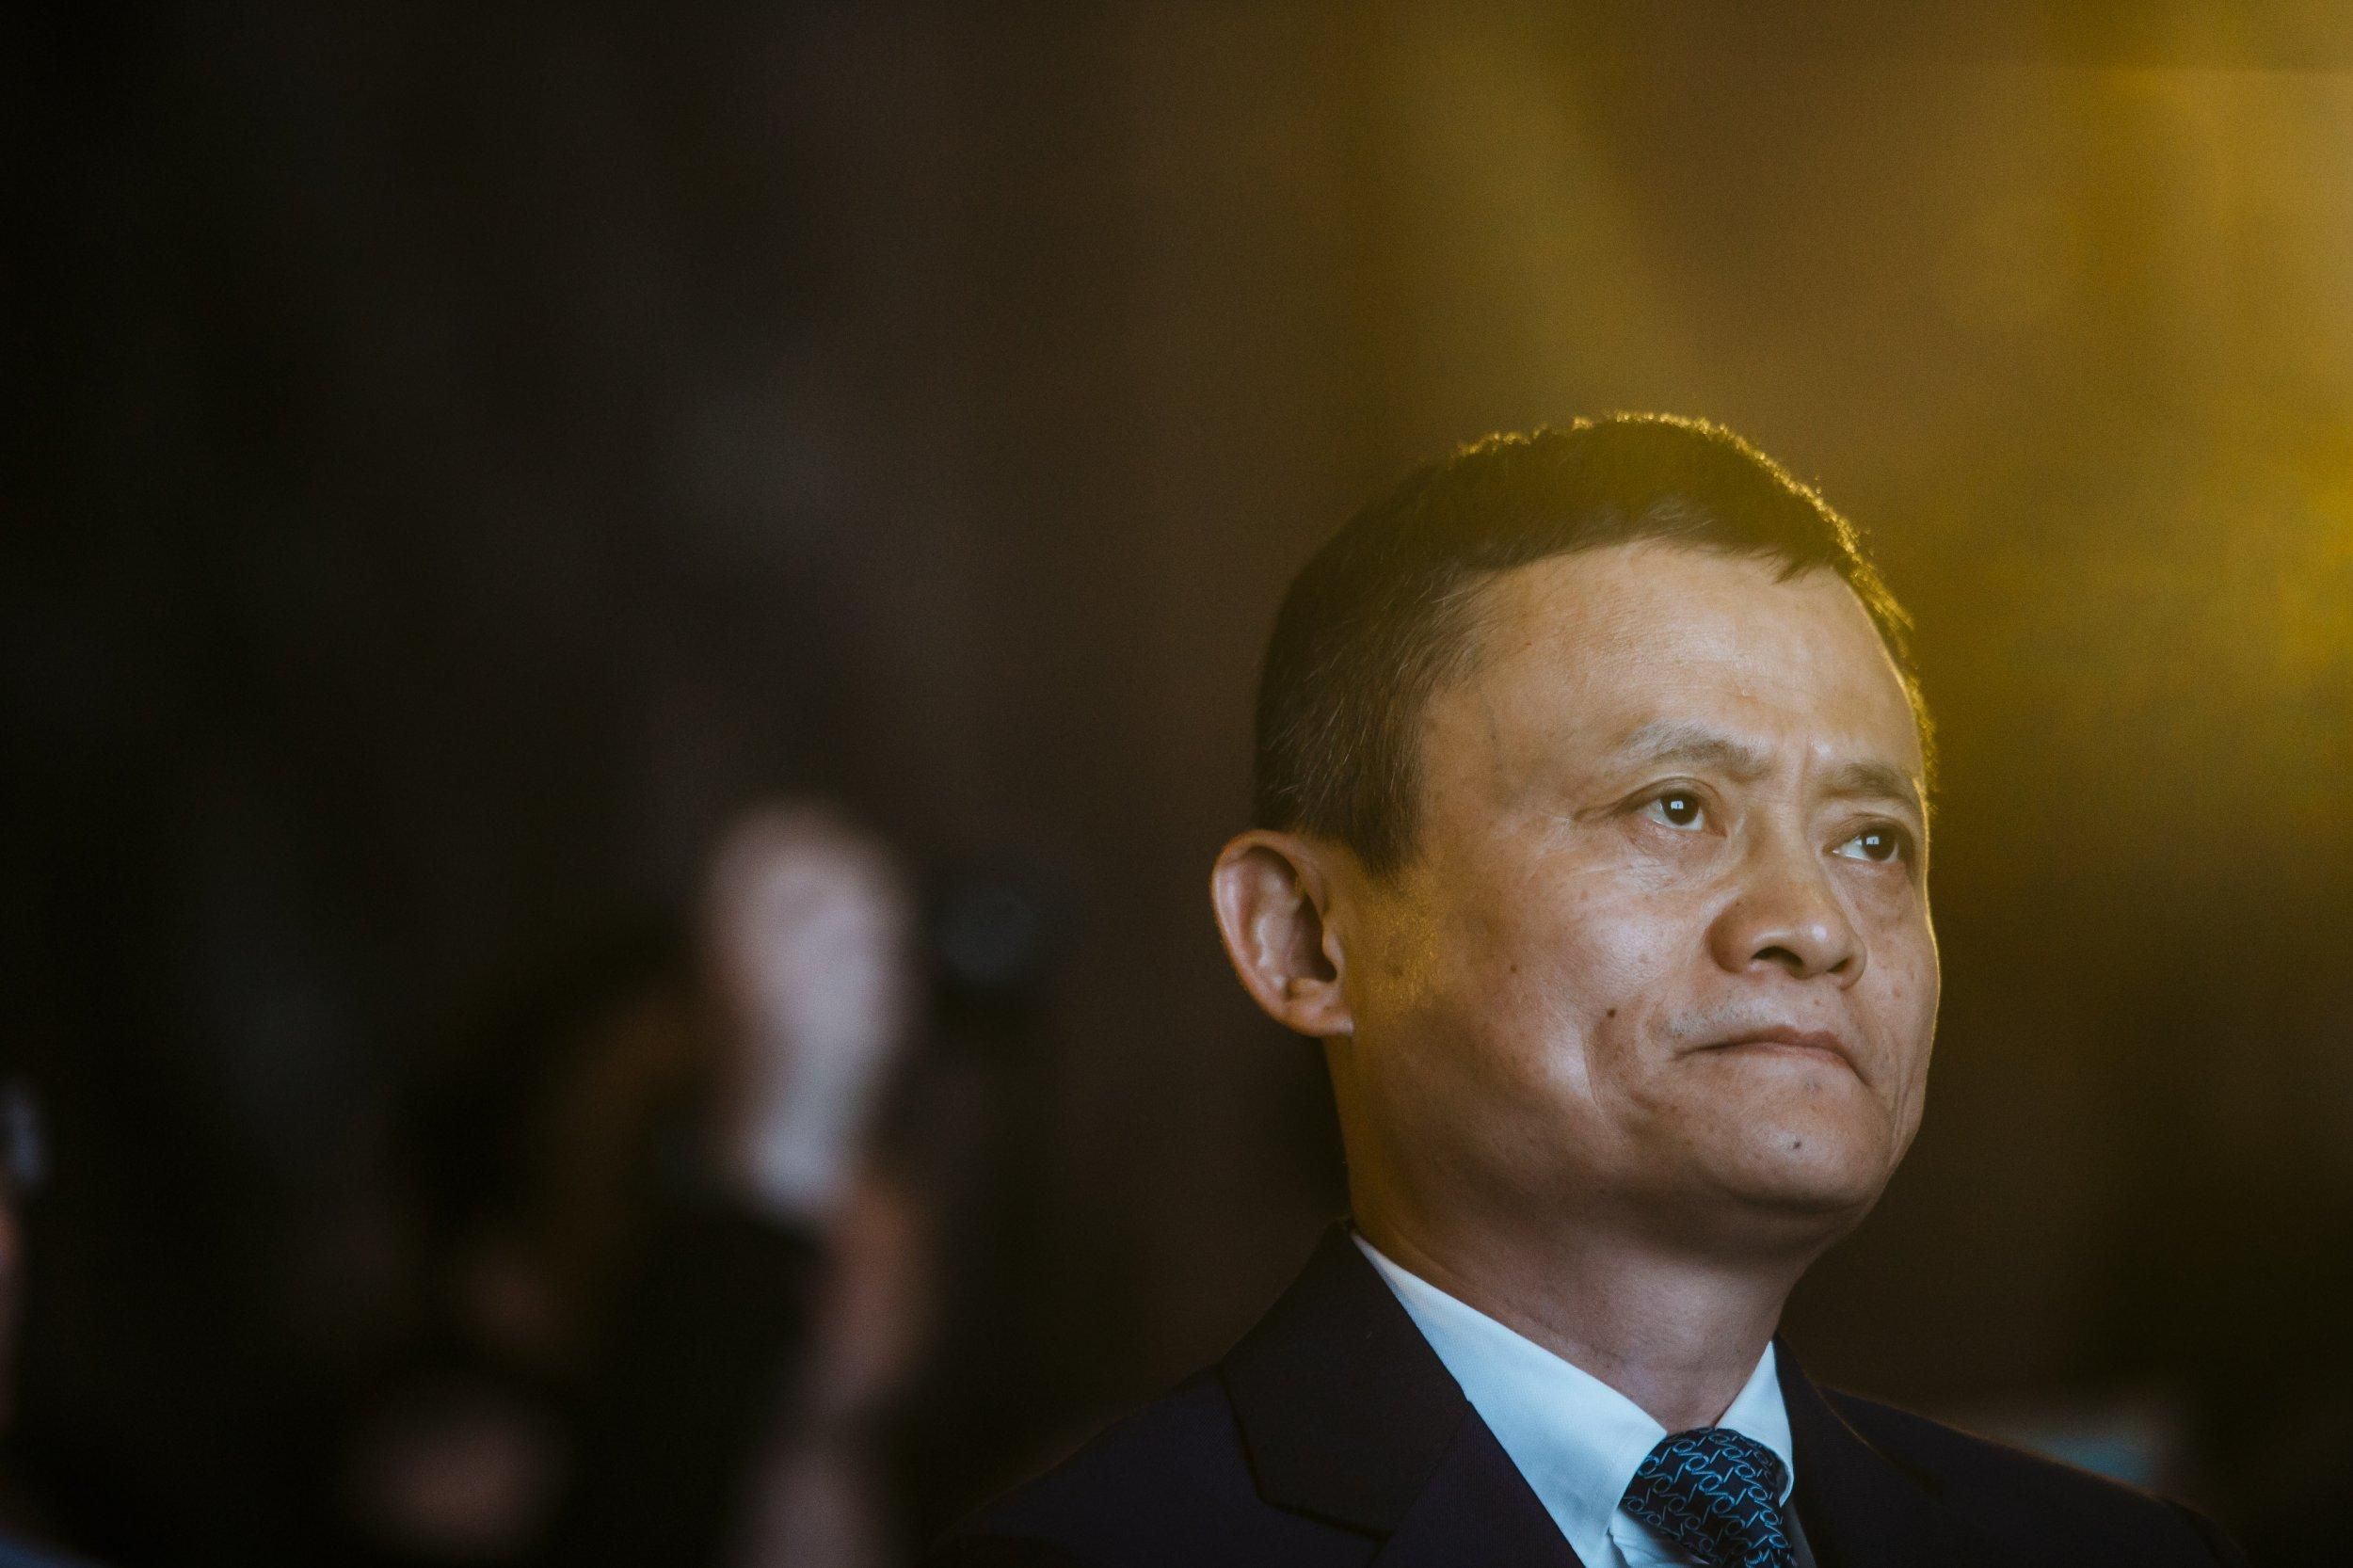 Китайский бизнесмен Джек Ма за год потерял почти 30 миллиардов долларов: почему так произошло - Финансы